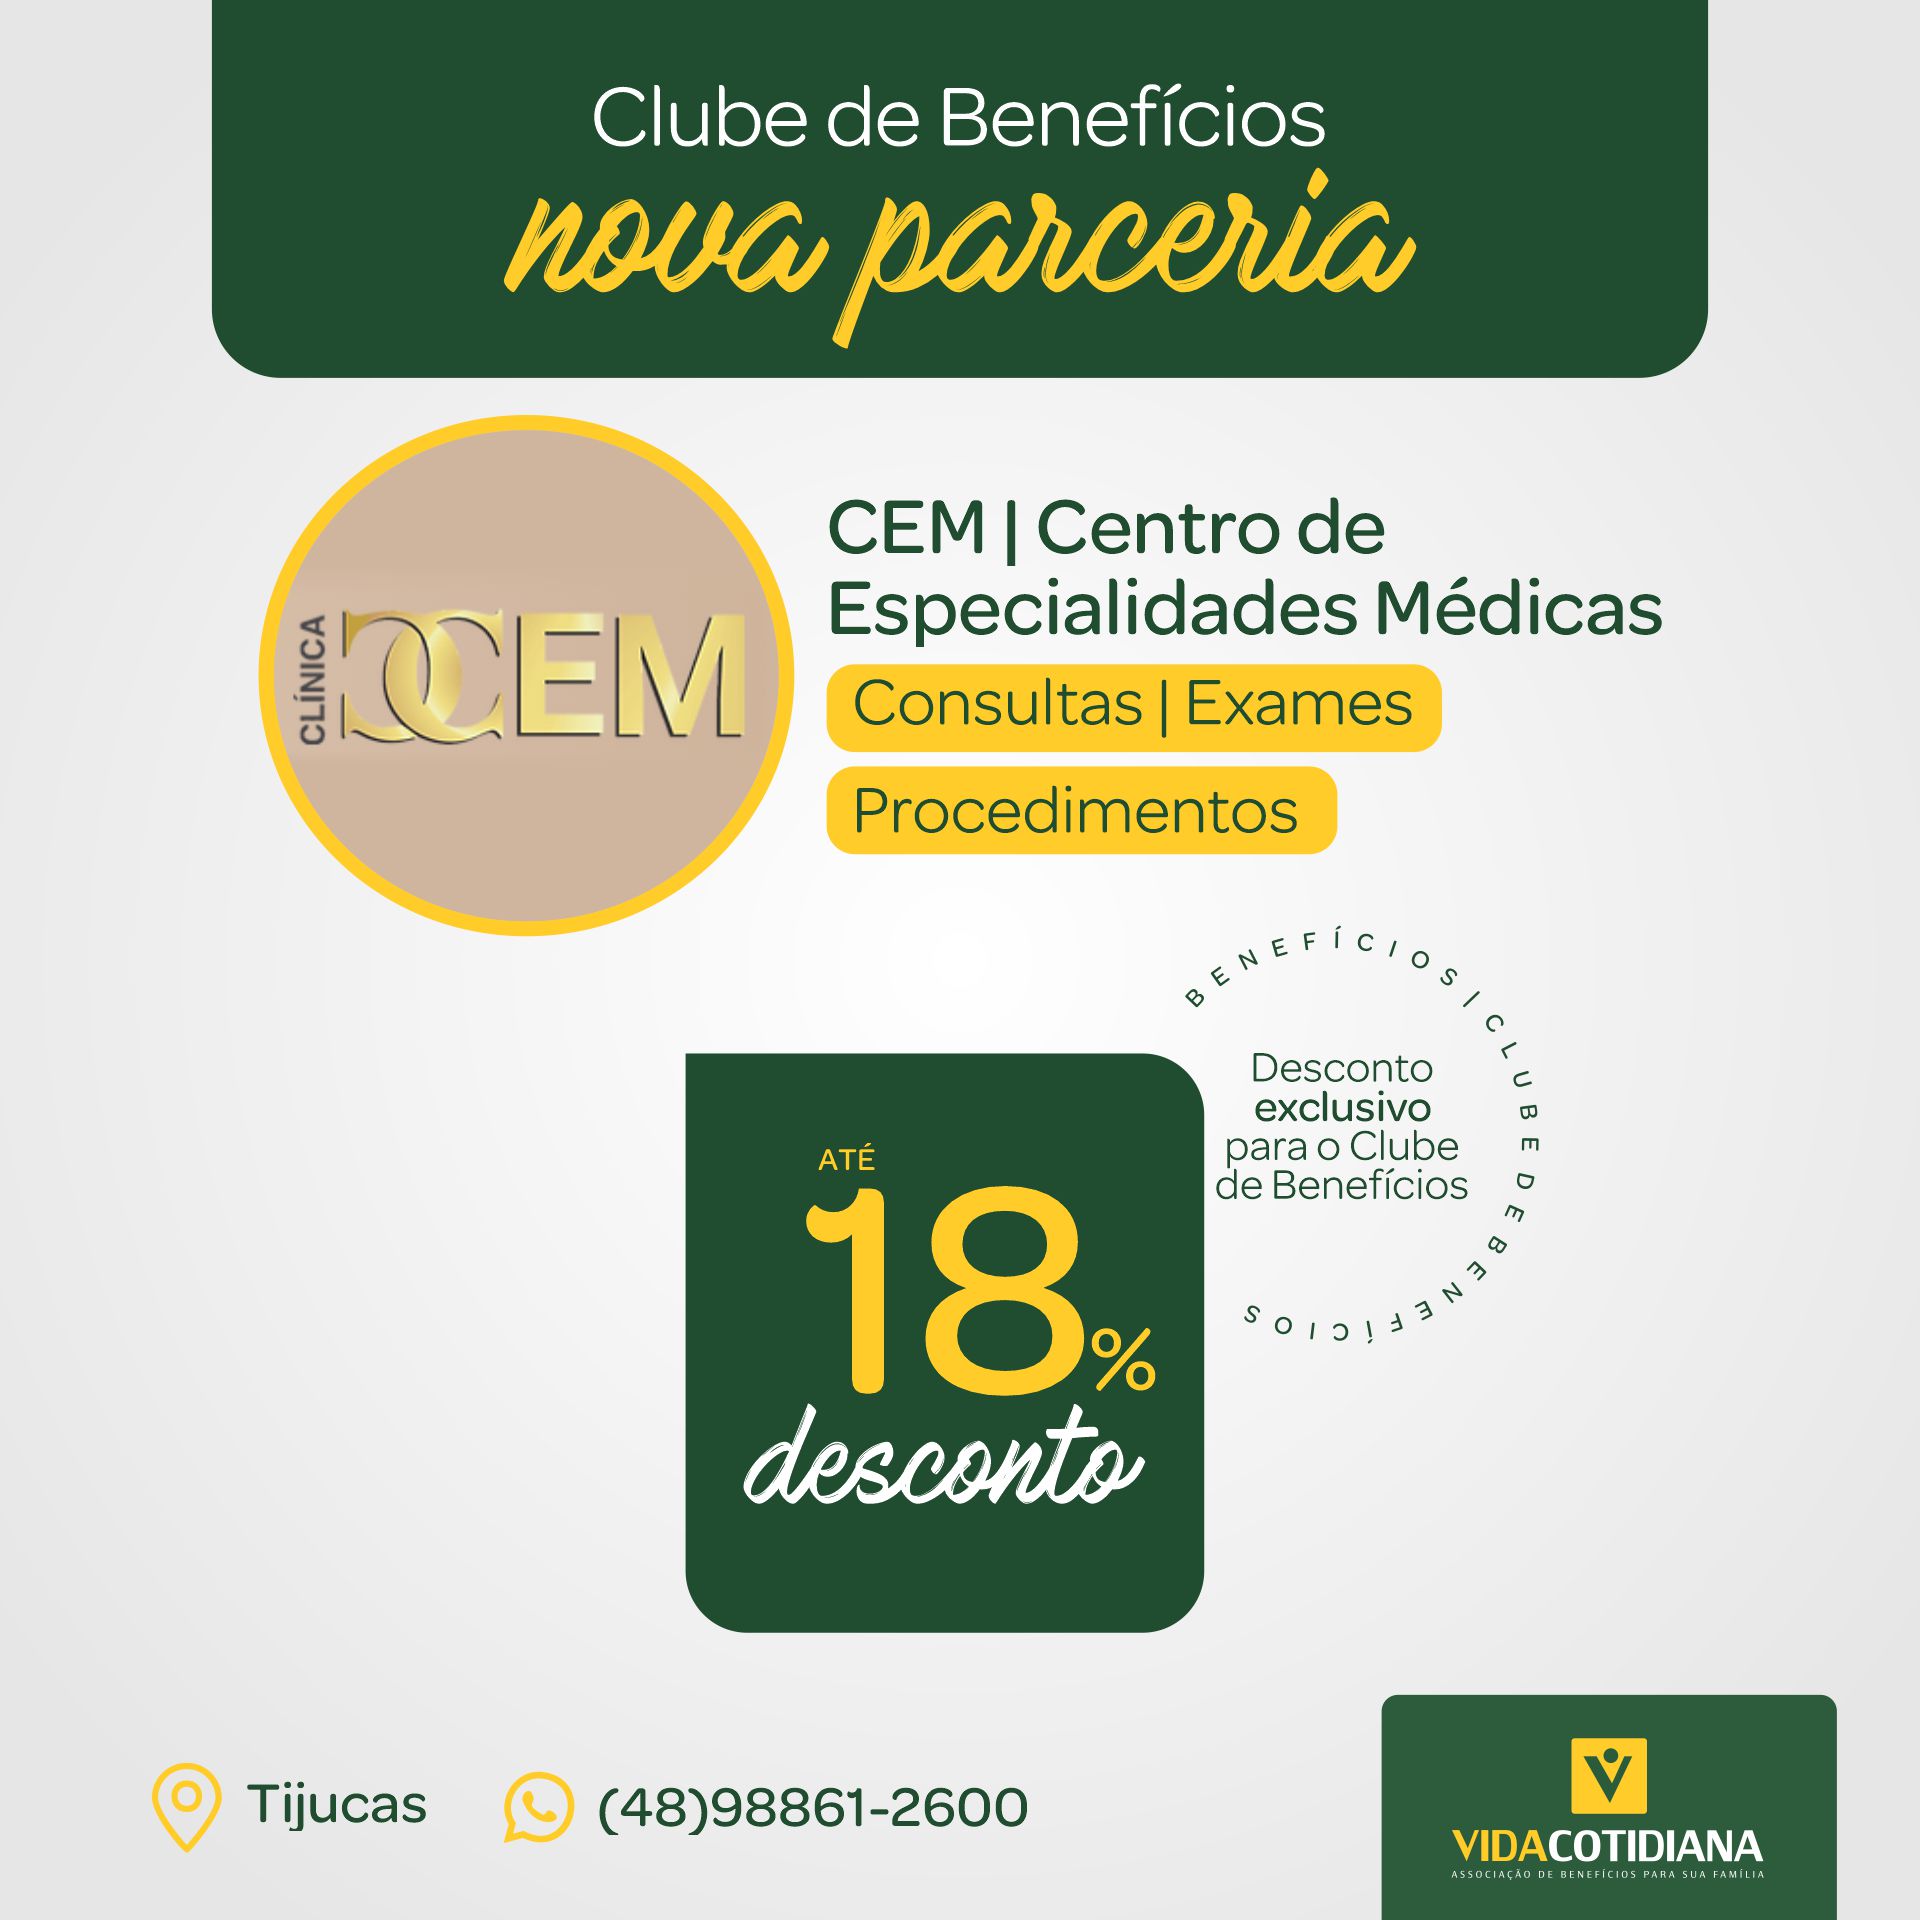 CEM - Centro de Especialidades Médicas